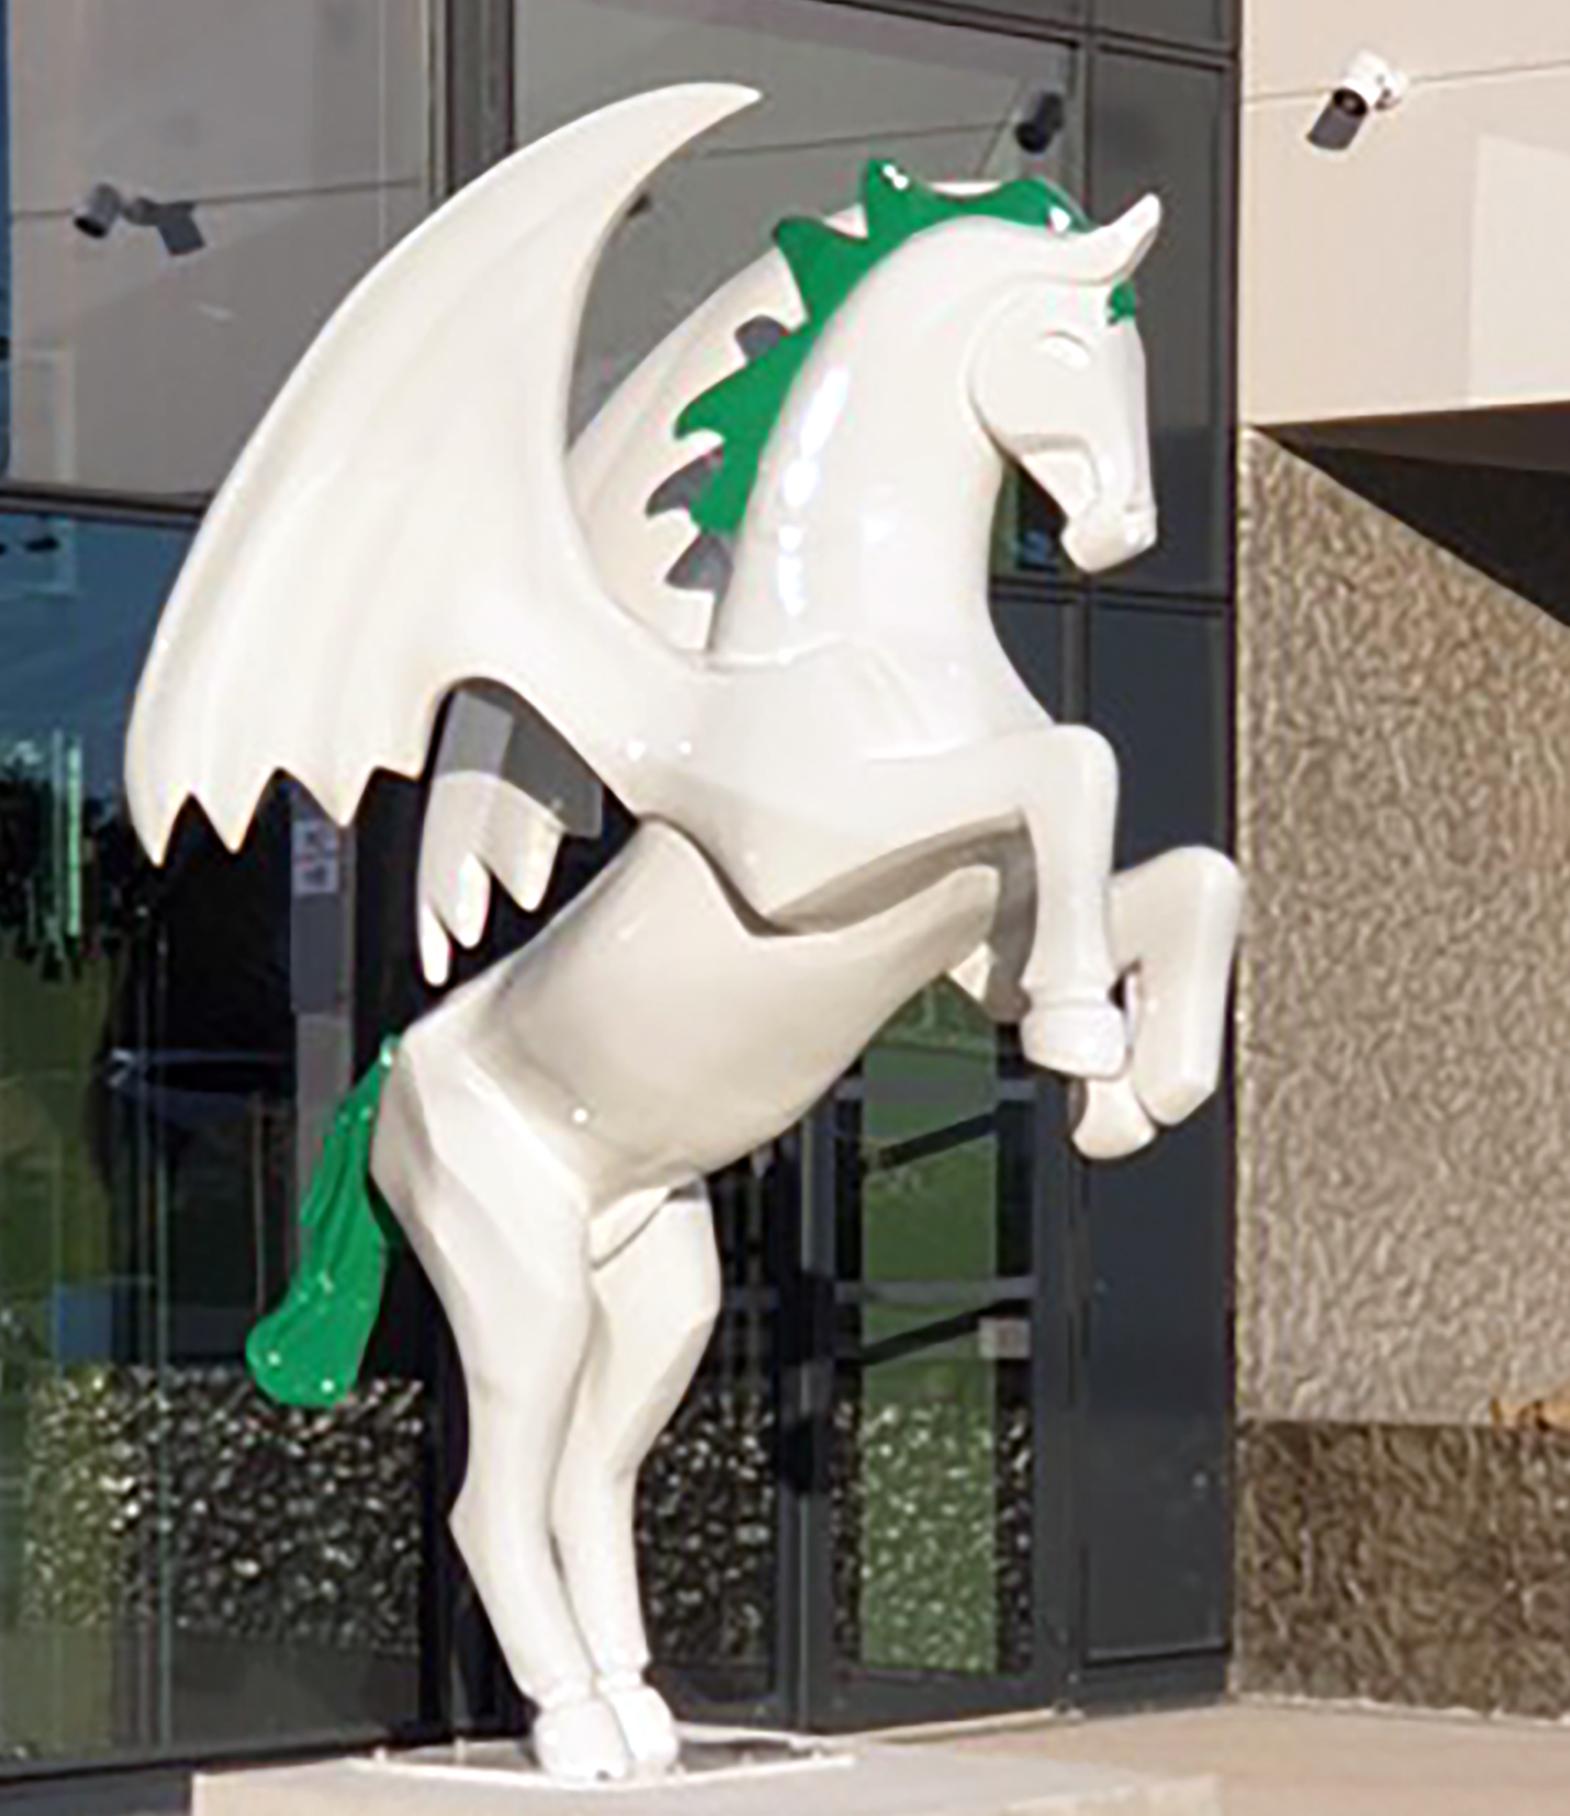 Arion de Mariko est une sculpture de cheval contemporaine monumentale unique, réalisée en résine et renforcée par une structure métallique intérieure, finie avec une peinture uréthane bi-composante, extrêmement résistante à l'exposition aux UV et